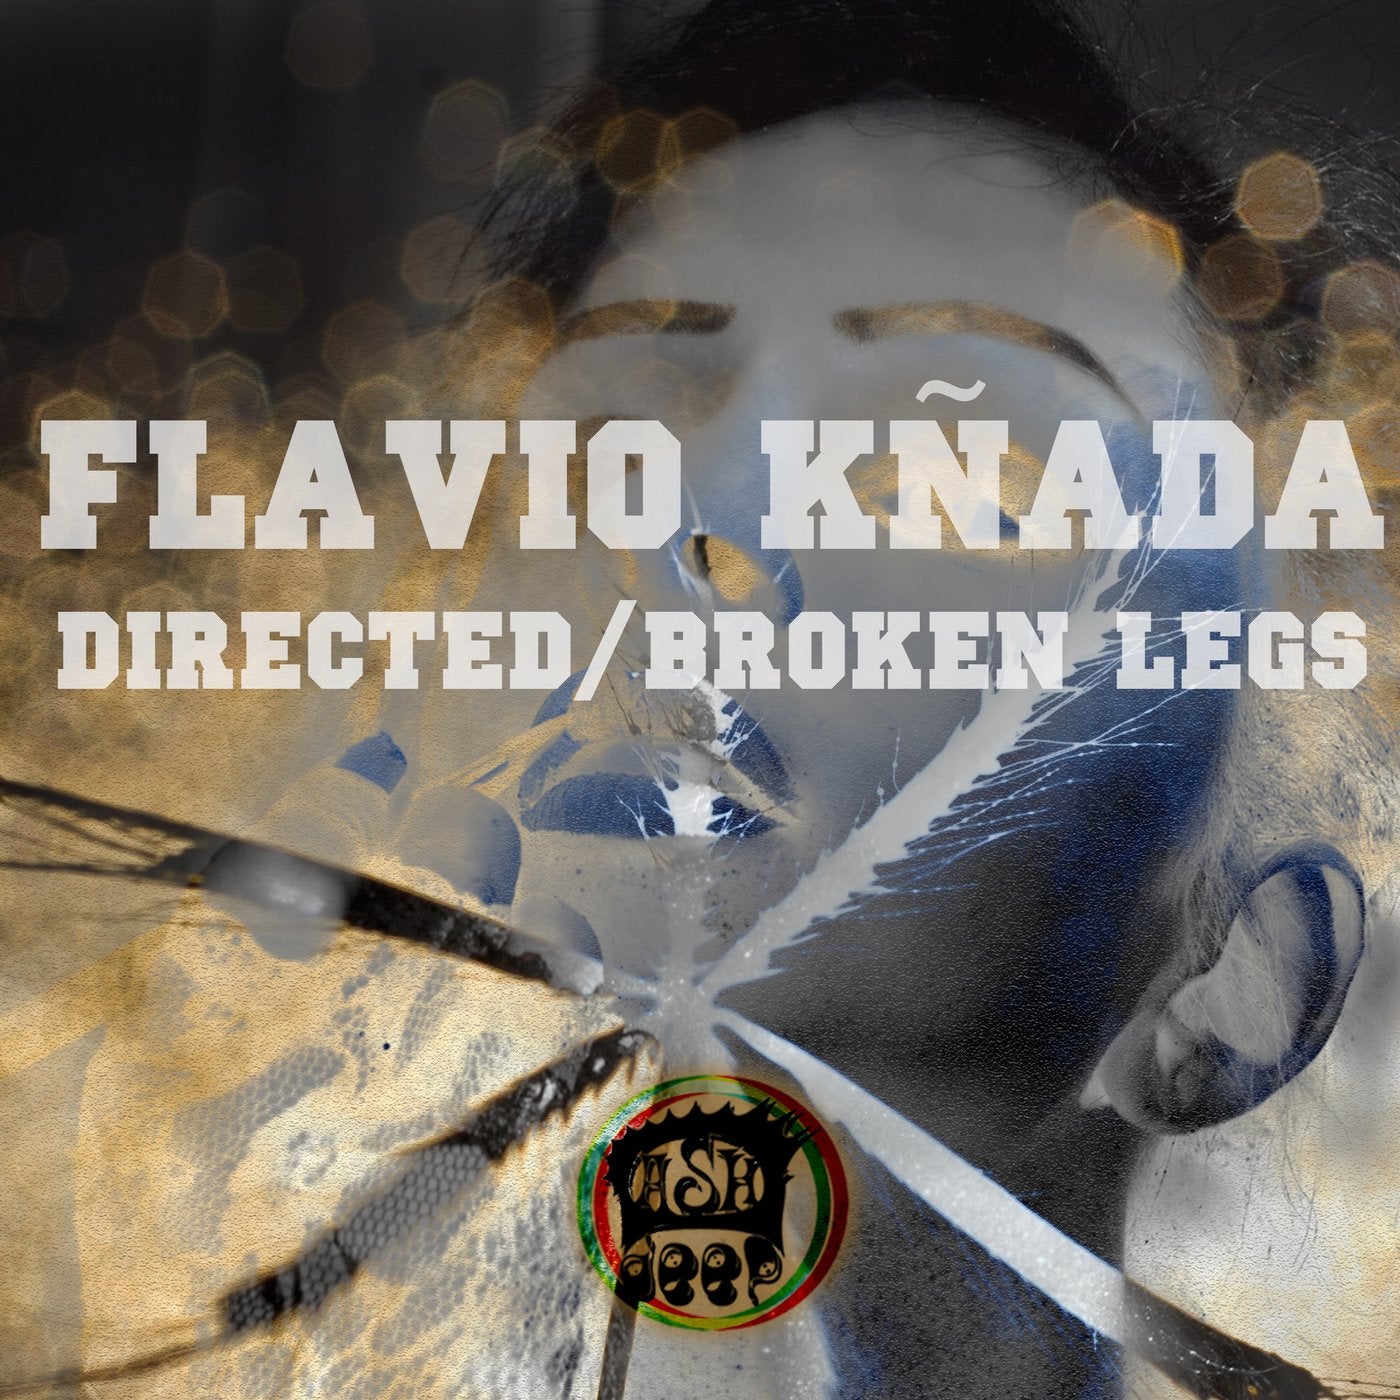 Directed, Broken Legs